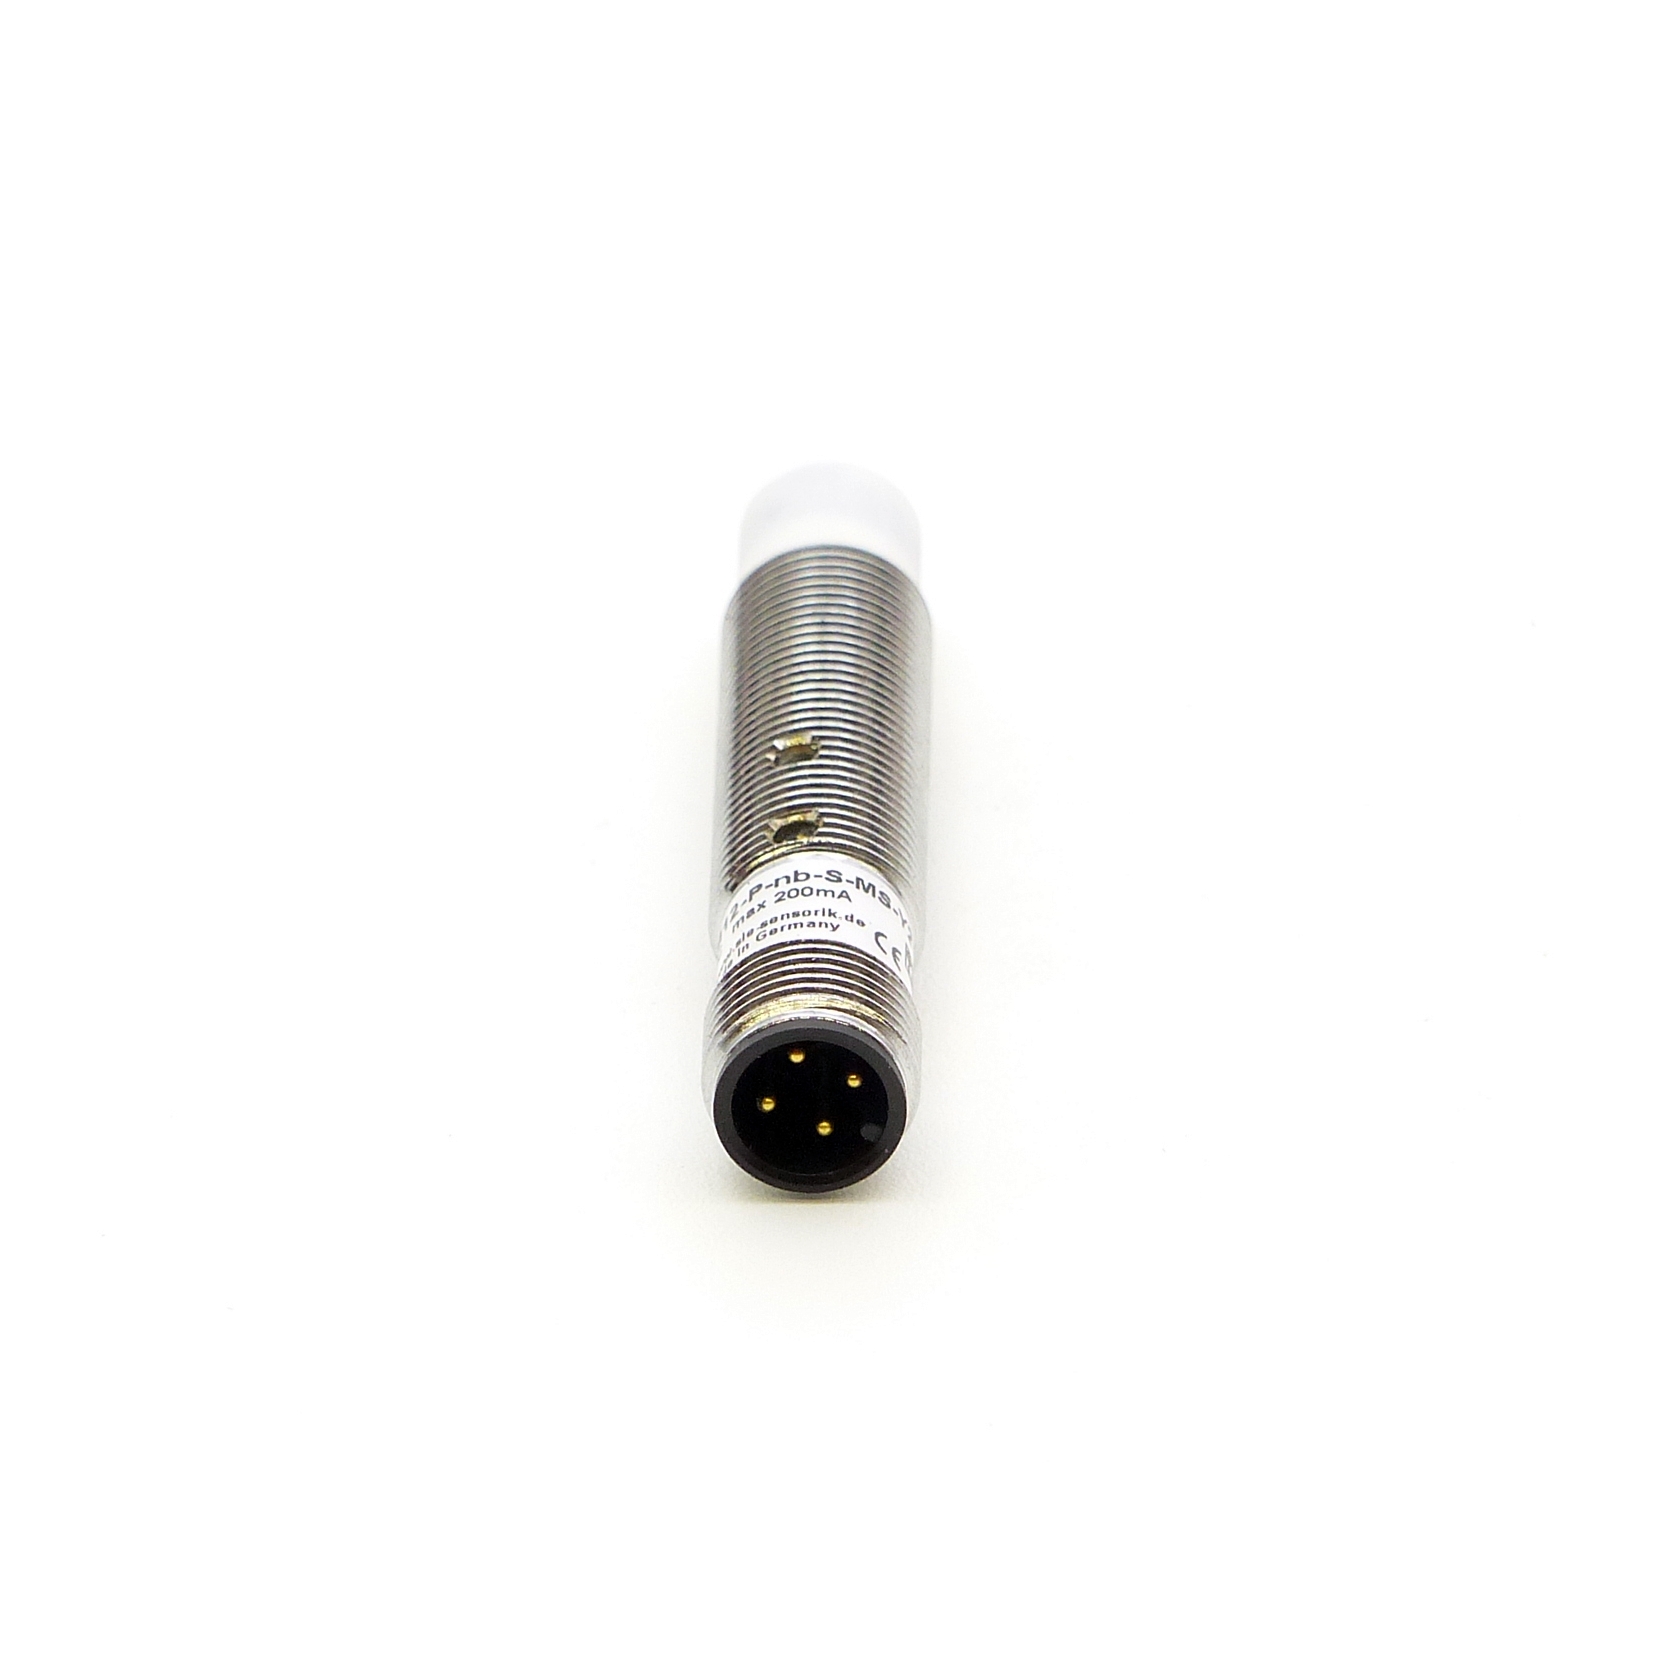 Sensor Induktiv SK1-8-M12-P-nb-S-MS-Y2 